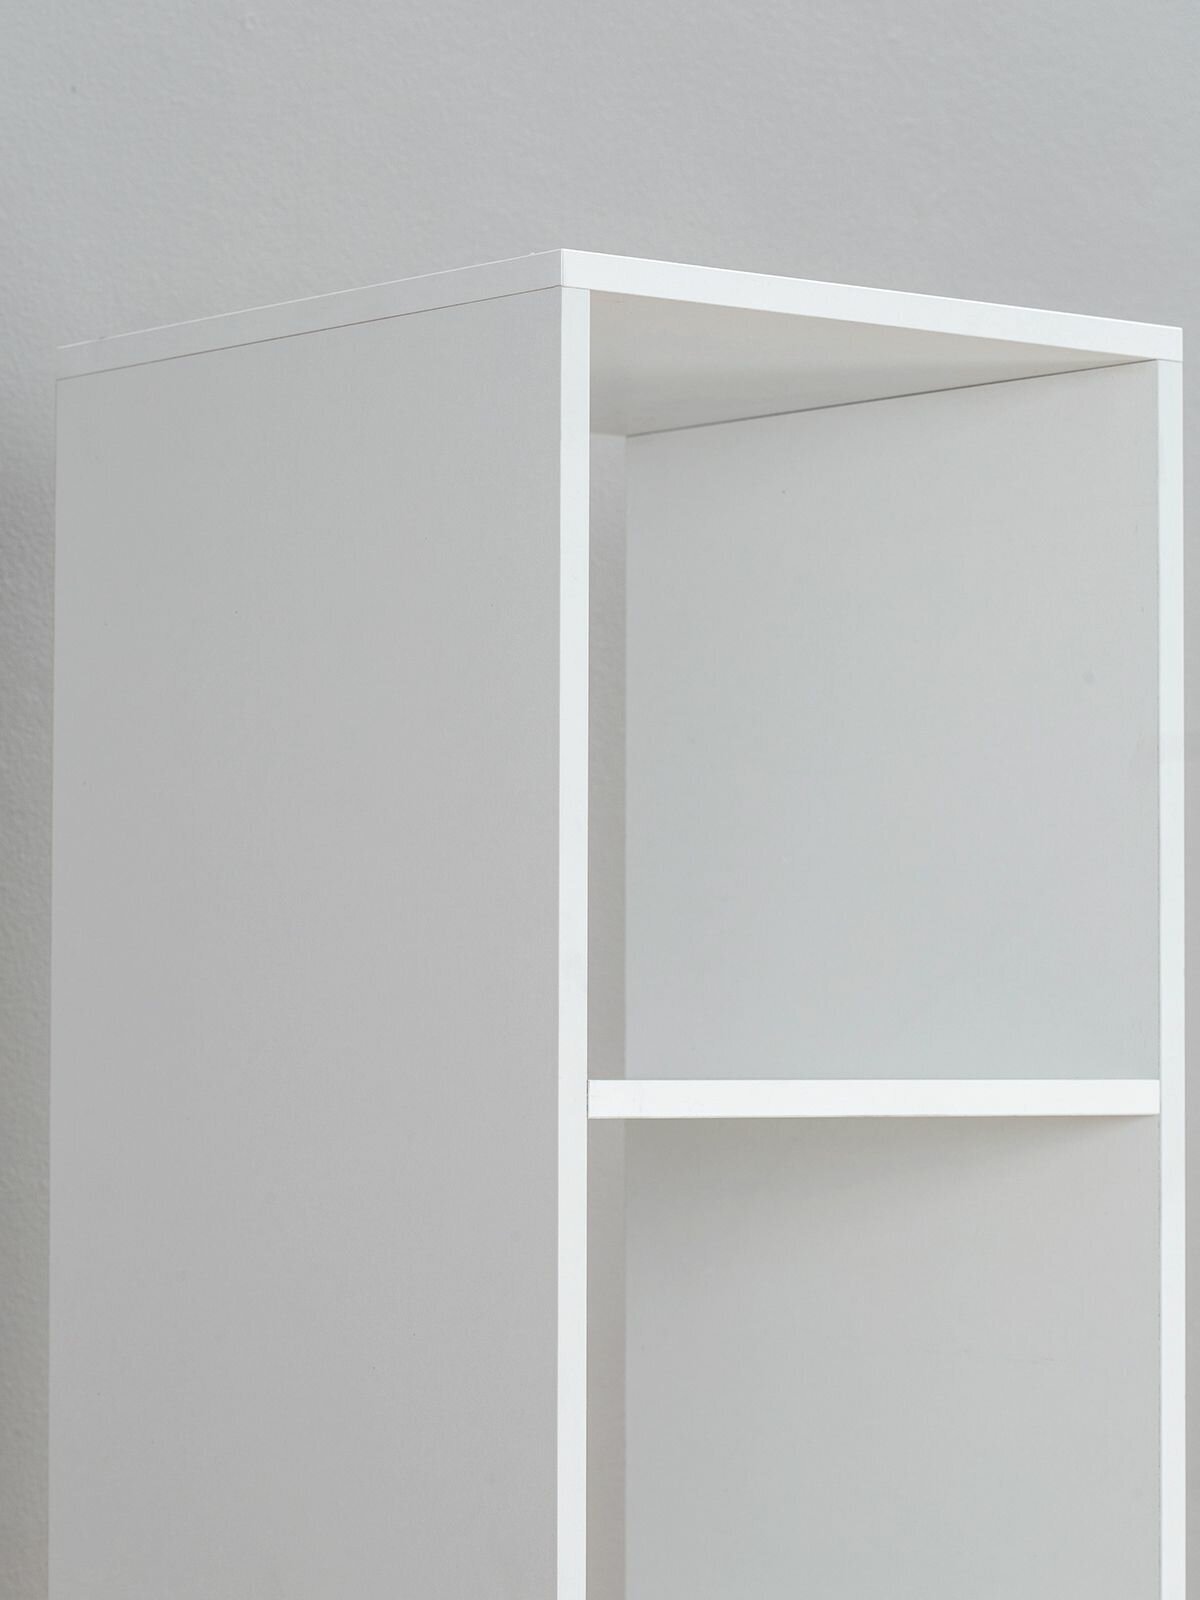 Стеллаж этажерка книжный универсальный деревянный открытый белый - 4 секции